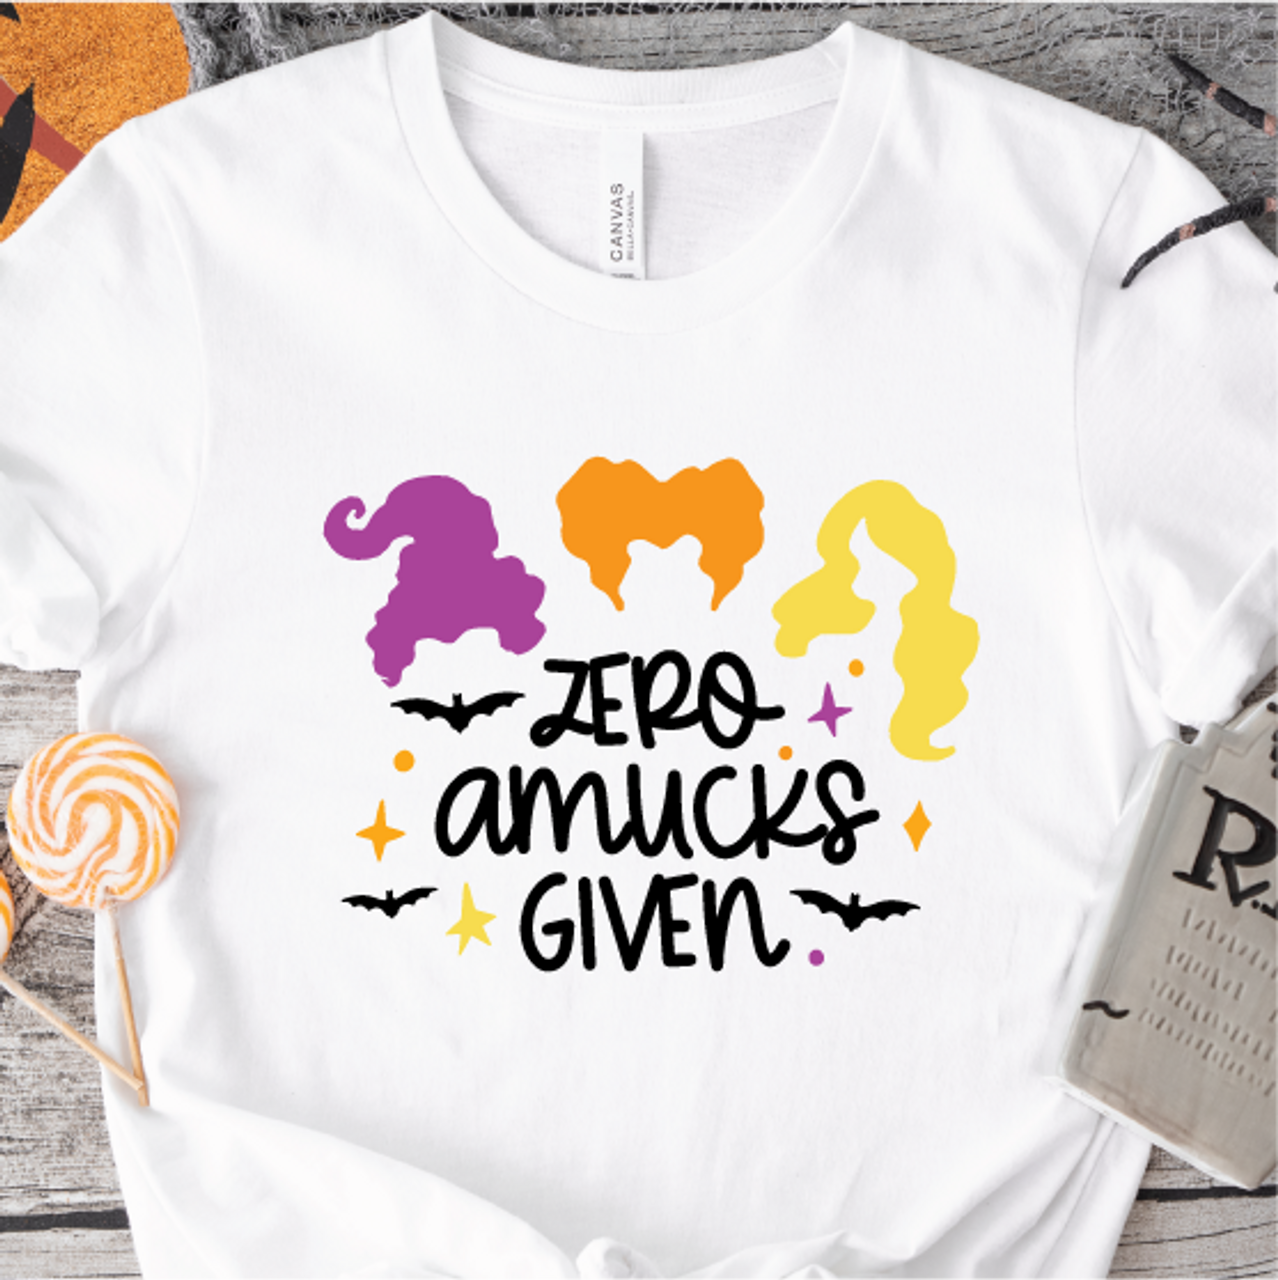 "Zero Amucks Given" T-shirt